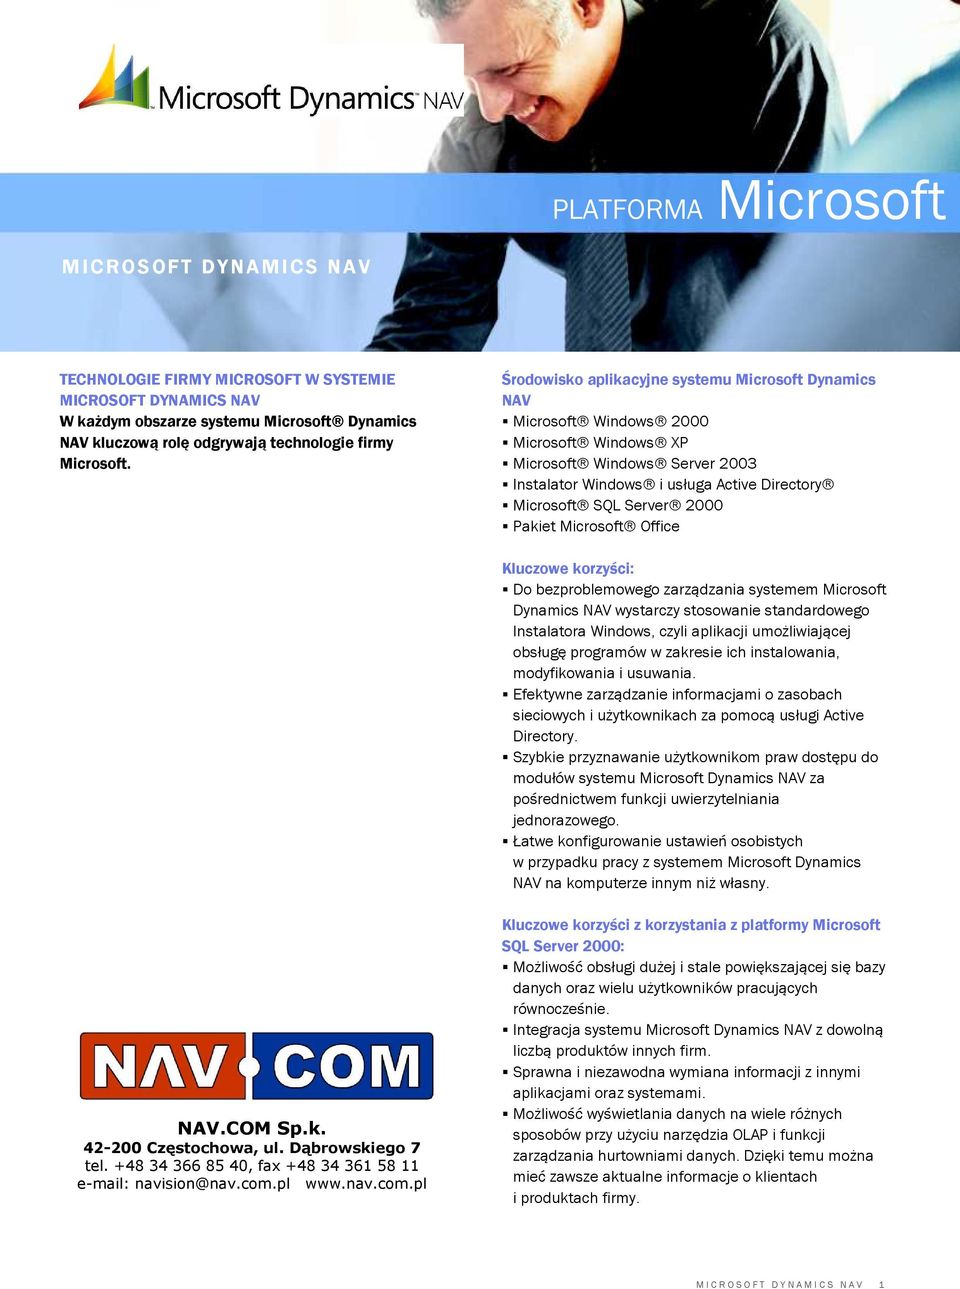 Środowisko aplikacyjne systemu Microsoft Dynamics NAV Microsoft Windows 2000 Microsoft Windows XP Microsoft Windows Server 2003 Instalator Windows i usługa Active Directory Microsoft SQL Server 2000